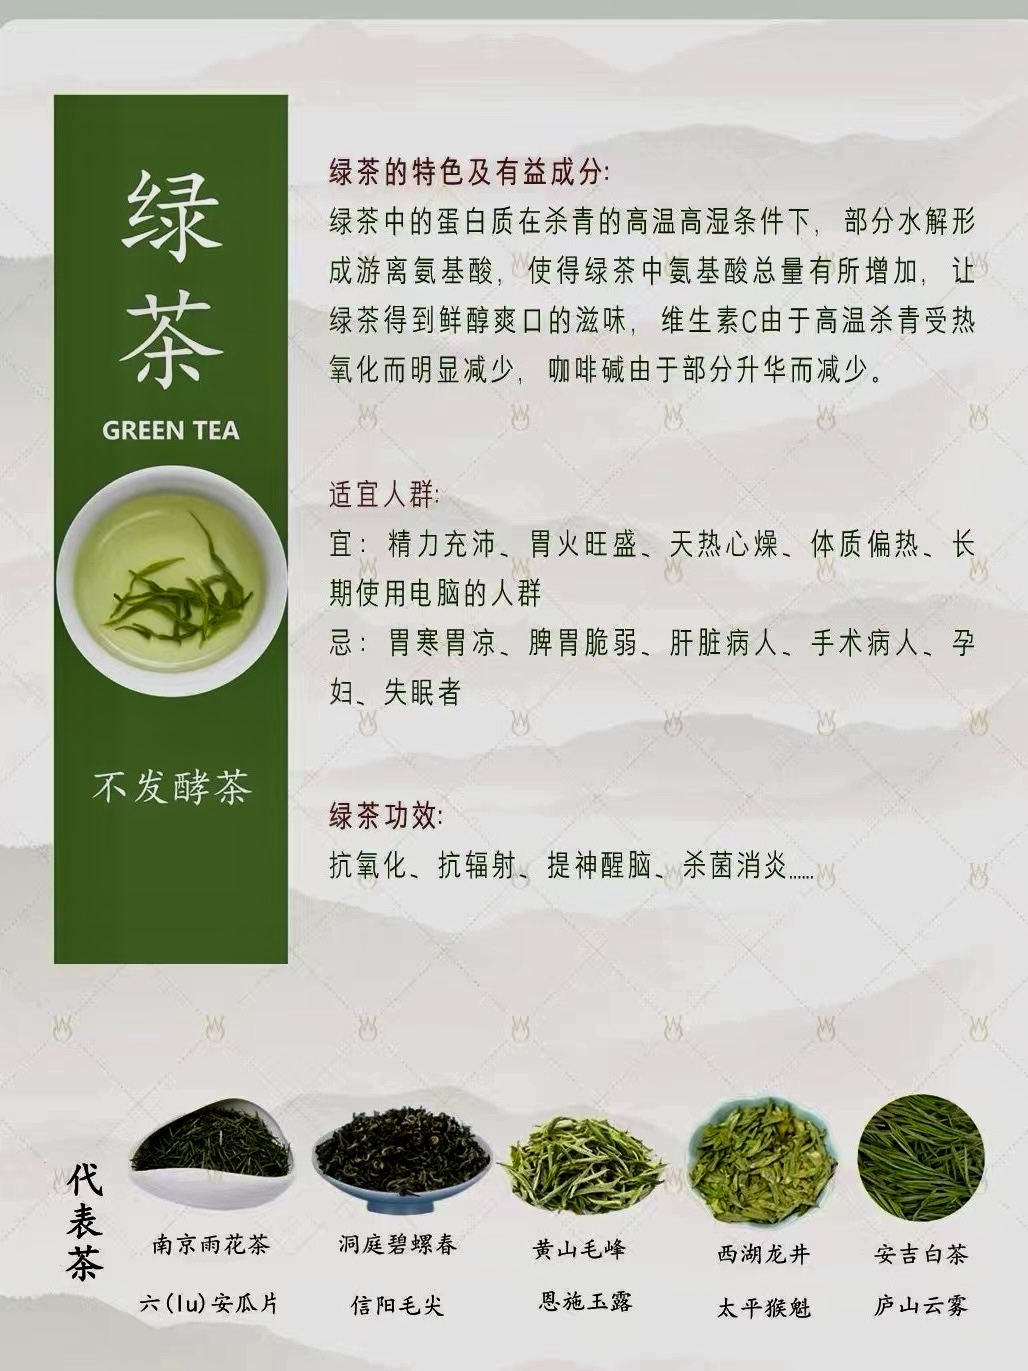 包括不发酵,发酵等程度不同的绿茶,白茶,黄茶,青茶,红茶和黑茶